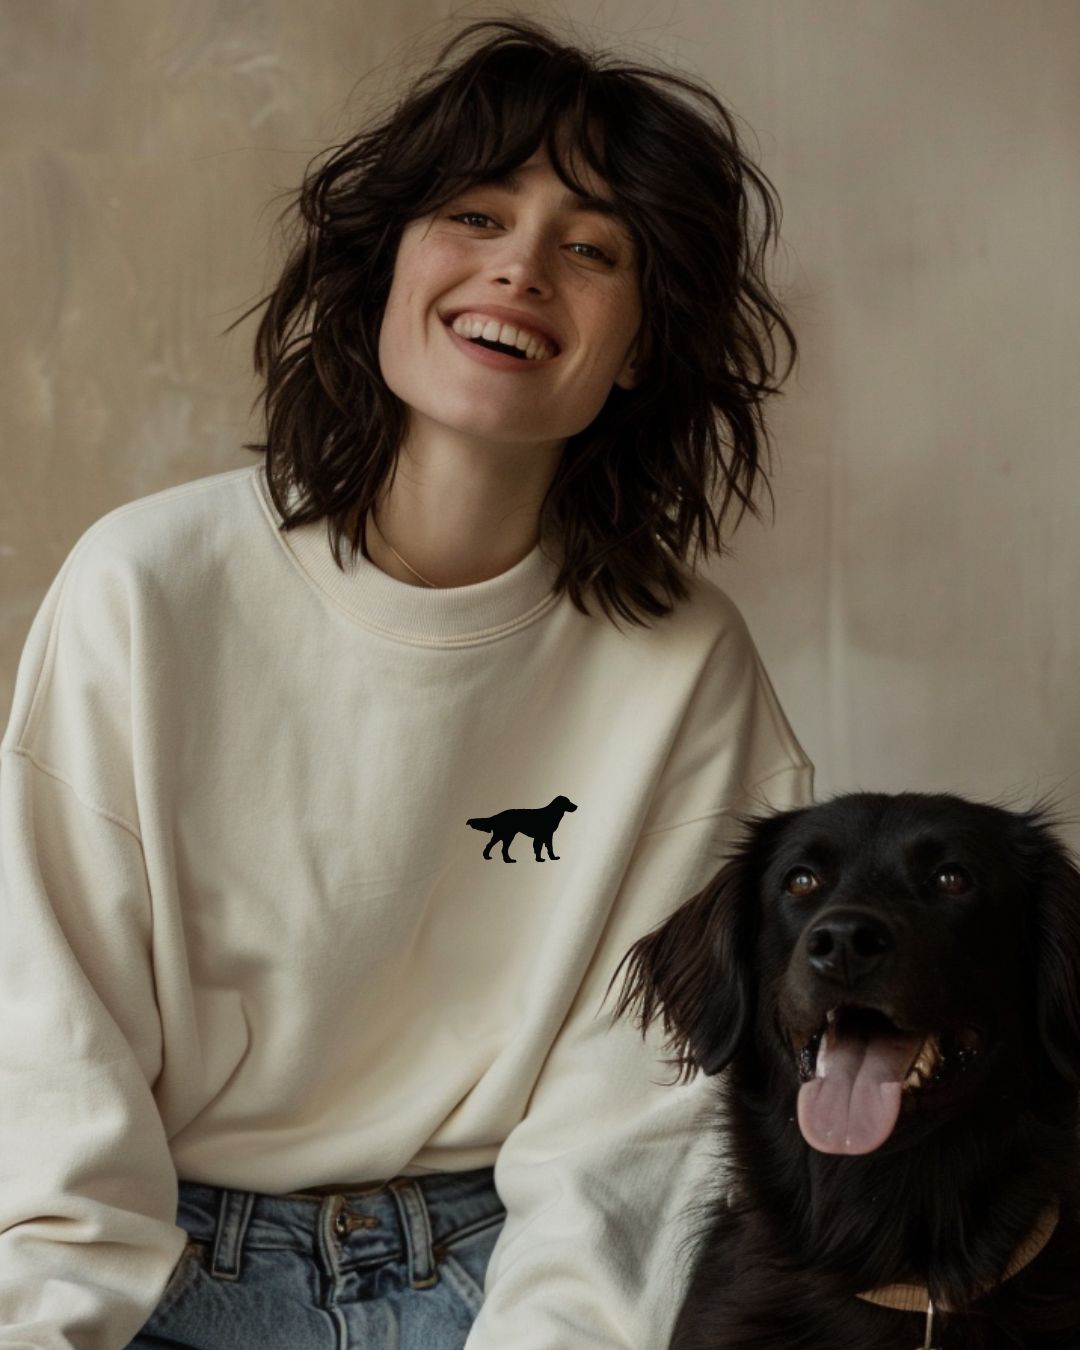 Premium Organic Sweatshirt mit deiner Hunderasse | Vintage White